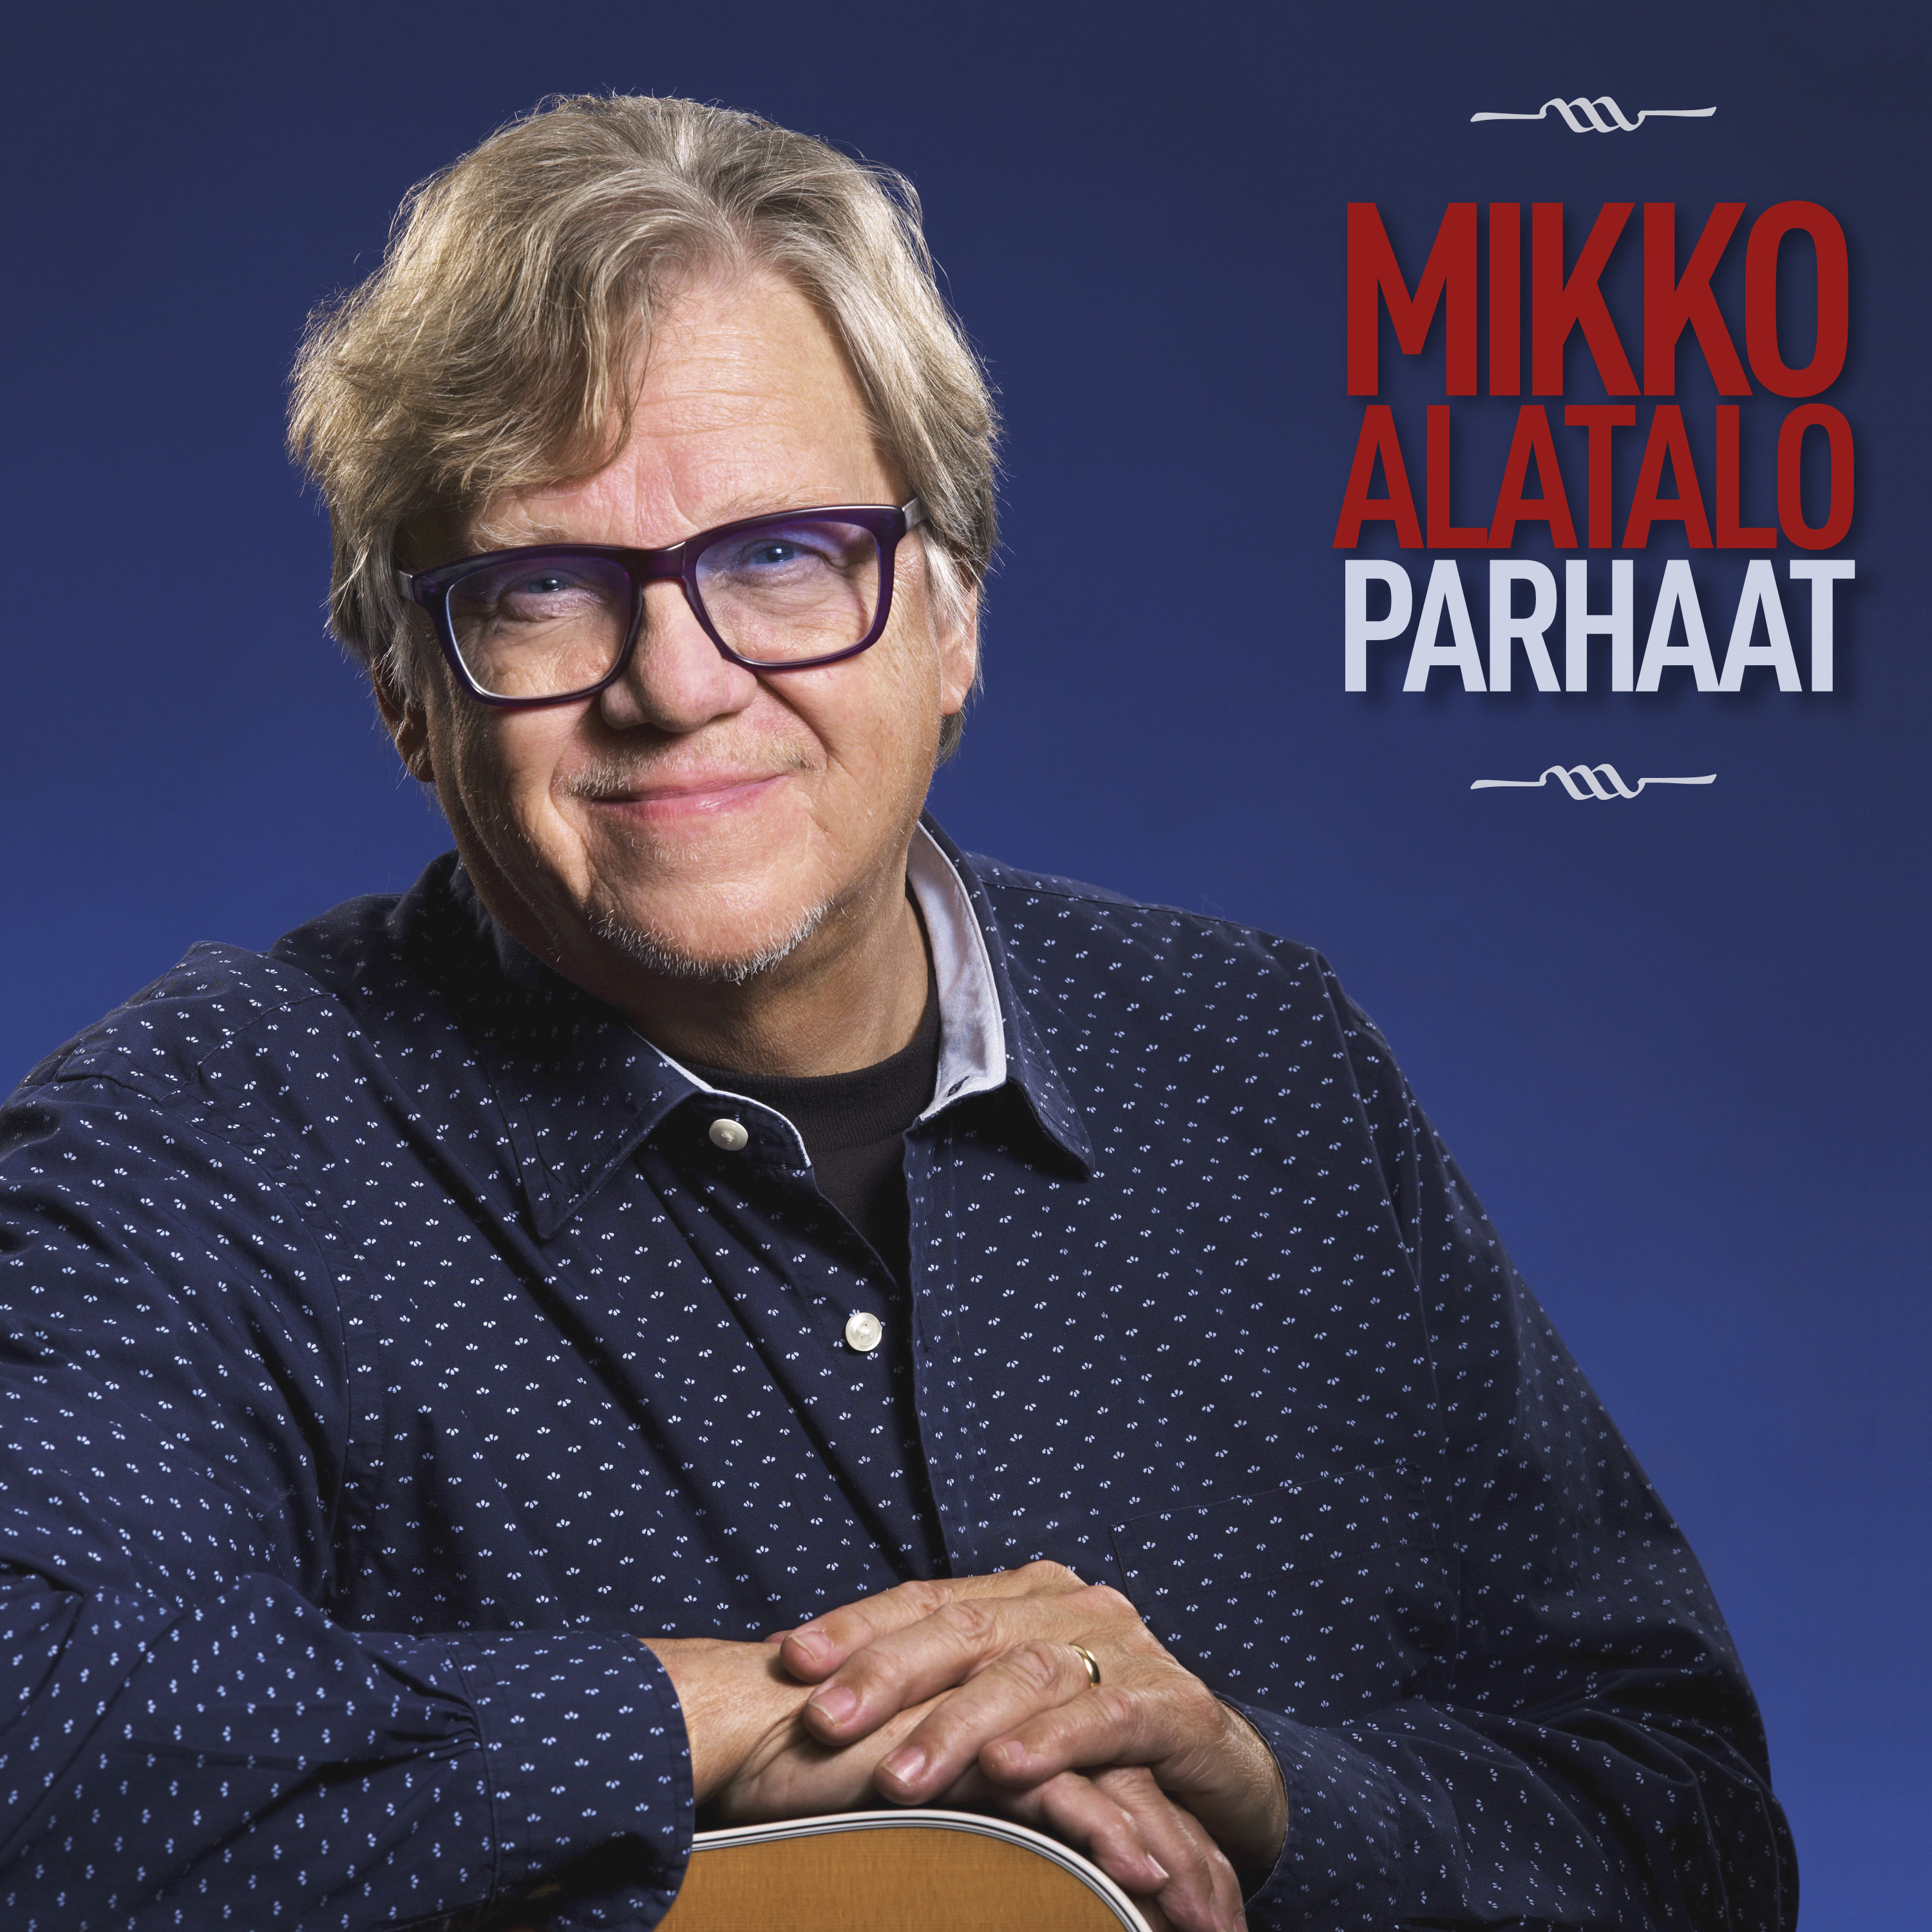 Mikko Alatalo - Parhaat